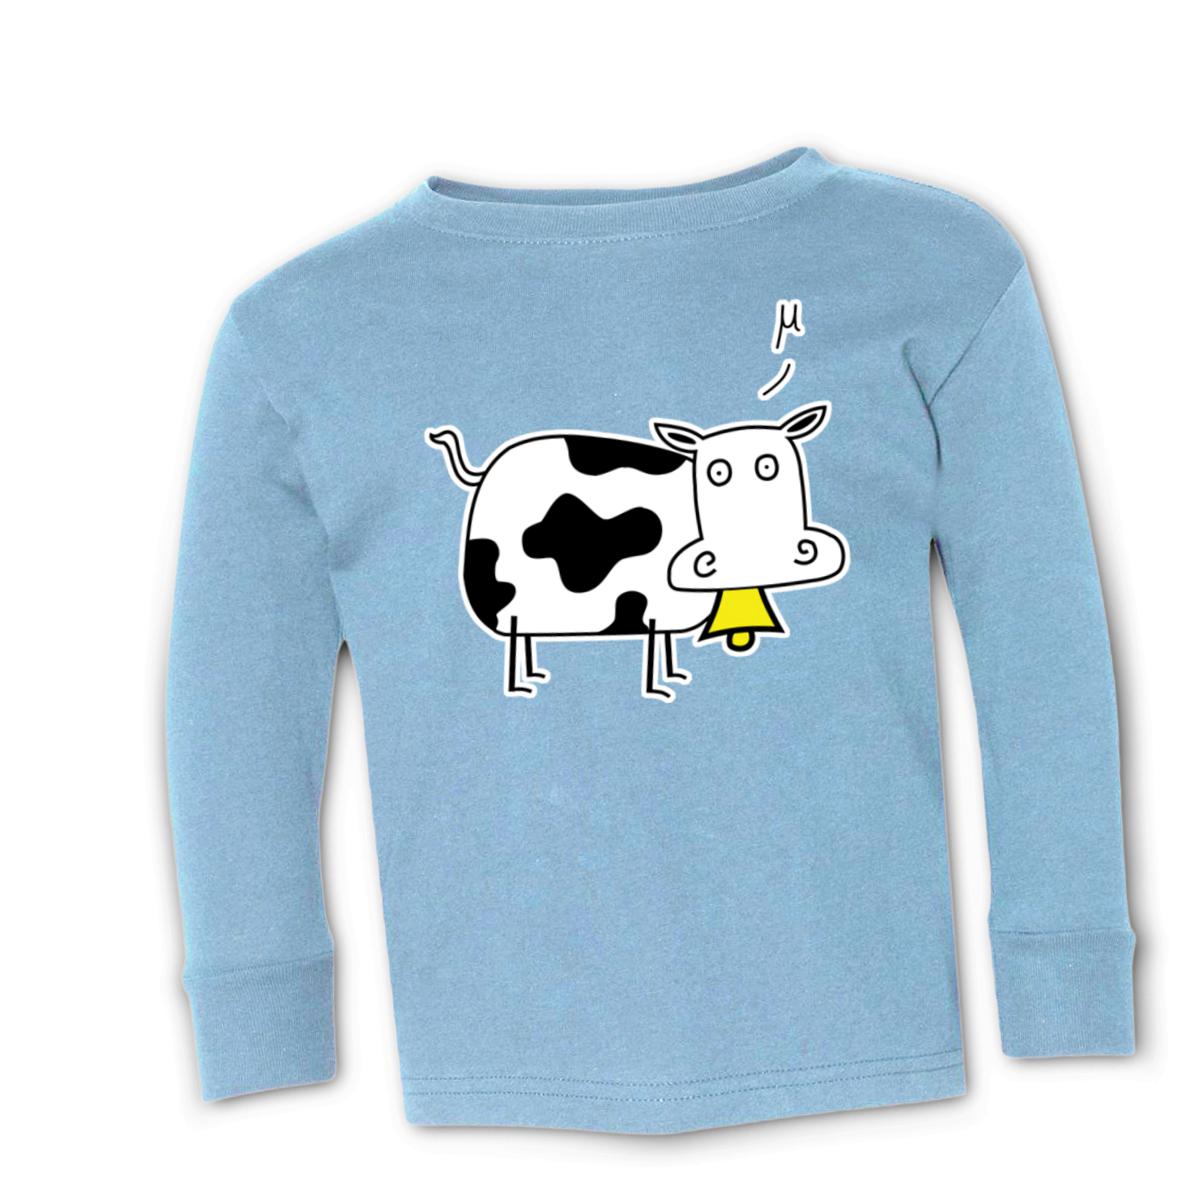 Mu Cow Toddler Long Sleeve Tee 2T light-blue